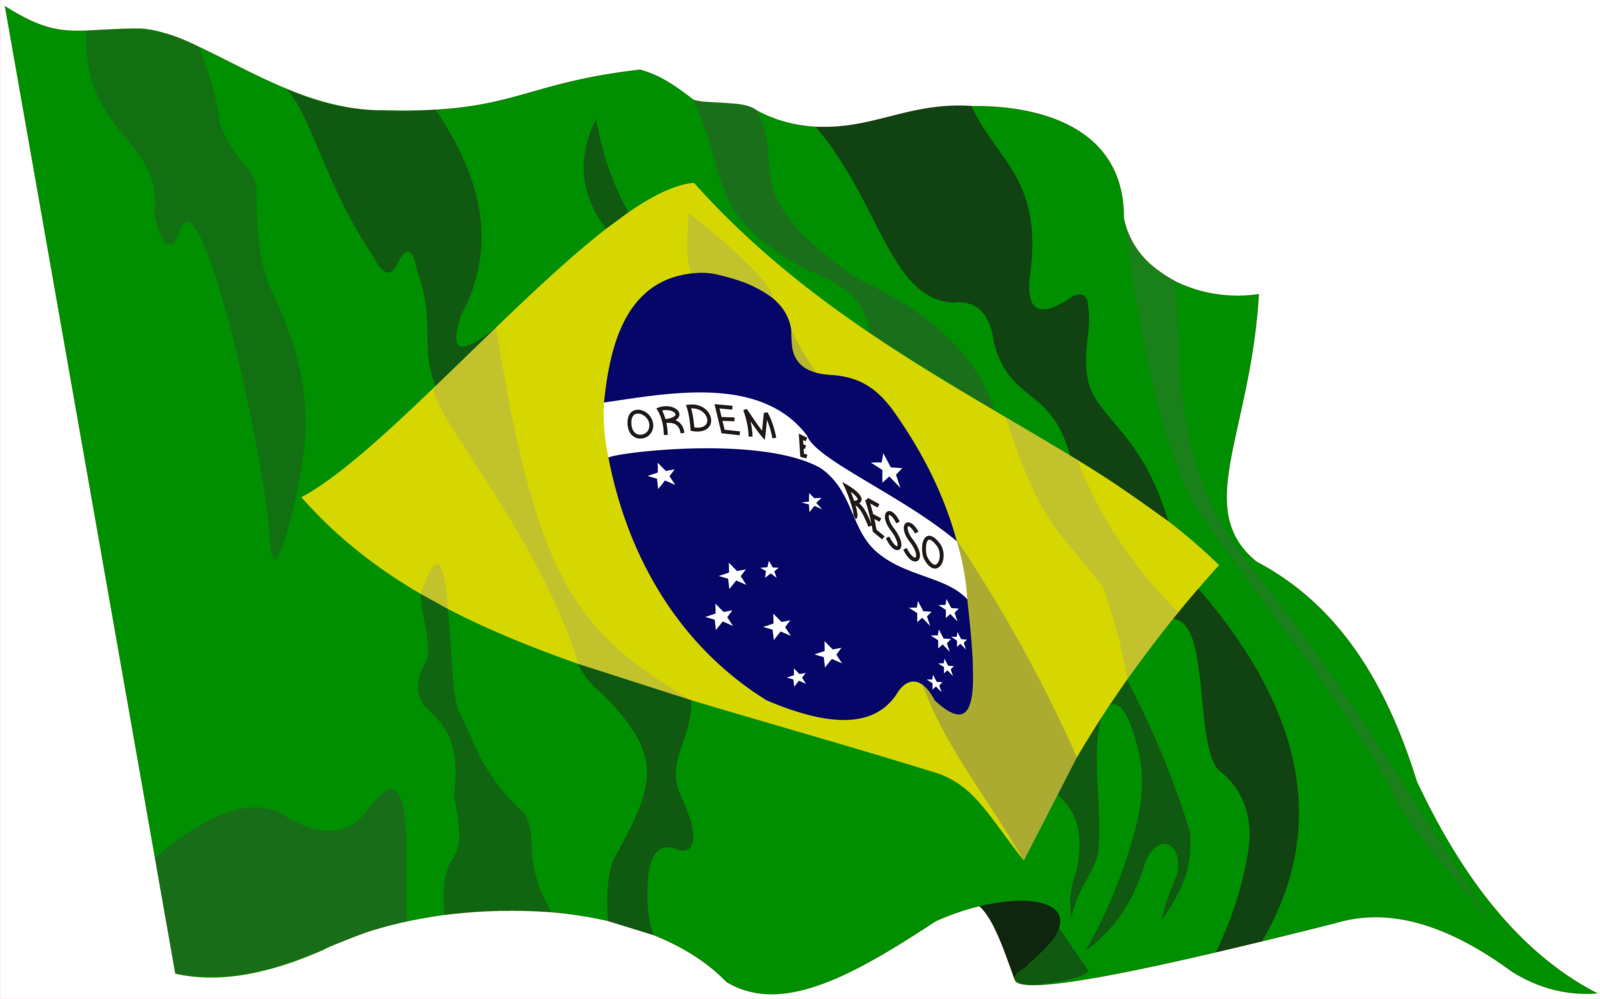 Spain Flag And Symbol Picture Vector - Bandeira Do Brasil Vetor (1600x999)